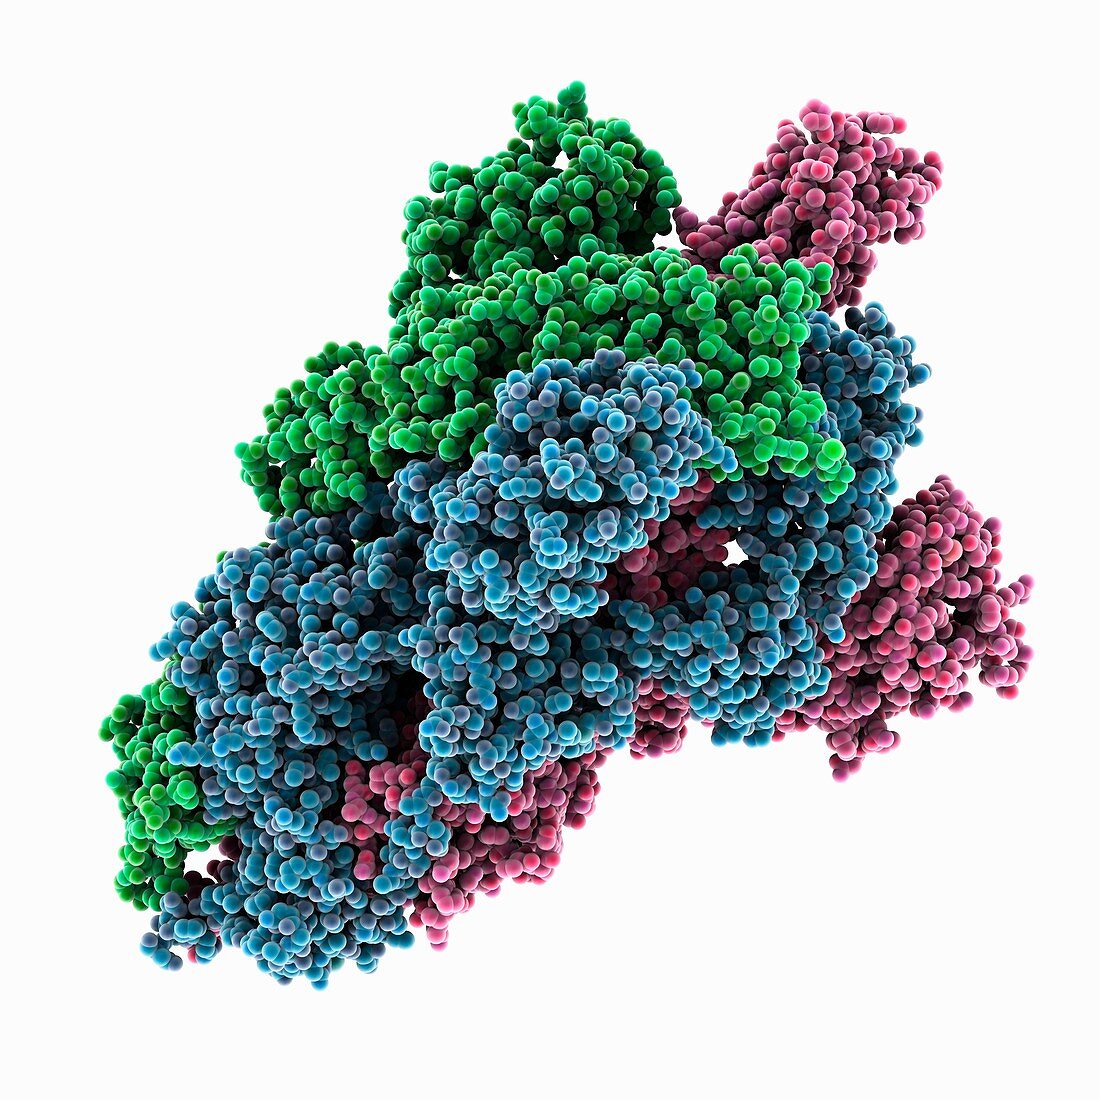 Coronavirus spike protein, illustration